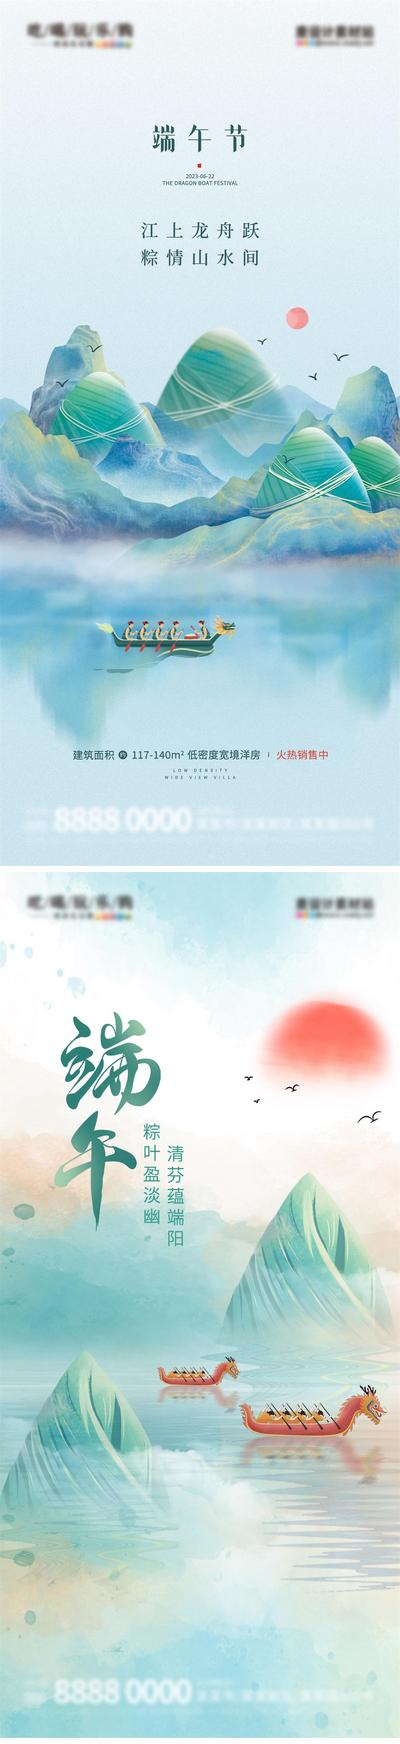 南门网 广告 海报 地产 端午 中式 系列 中国传统节日 端午节 粽子 龙舟 系列 品质